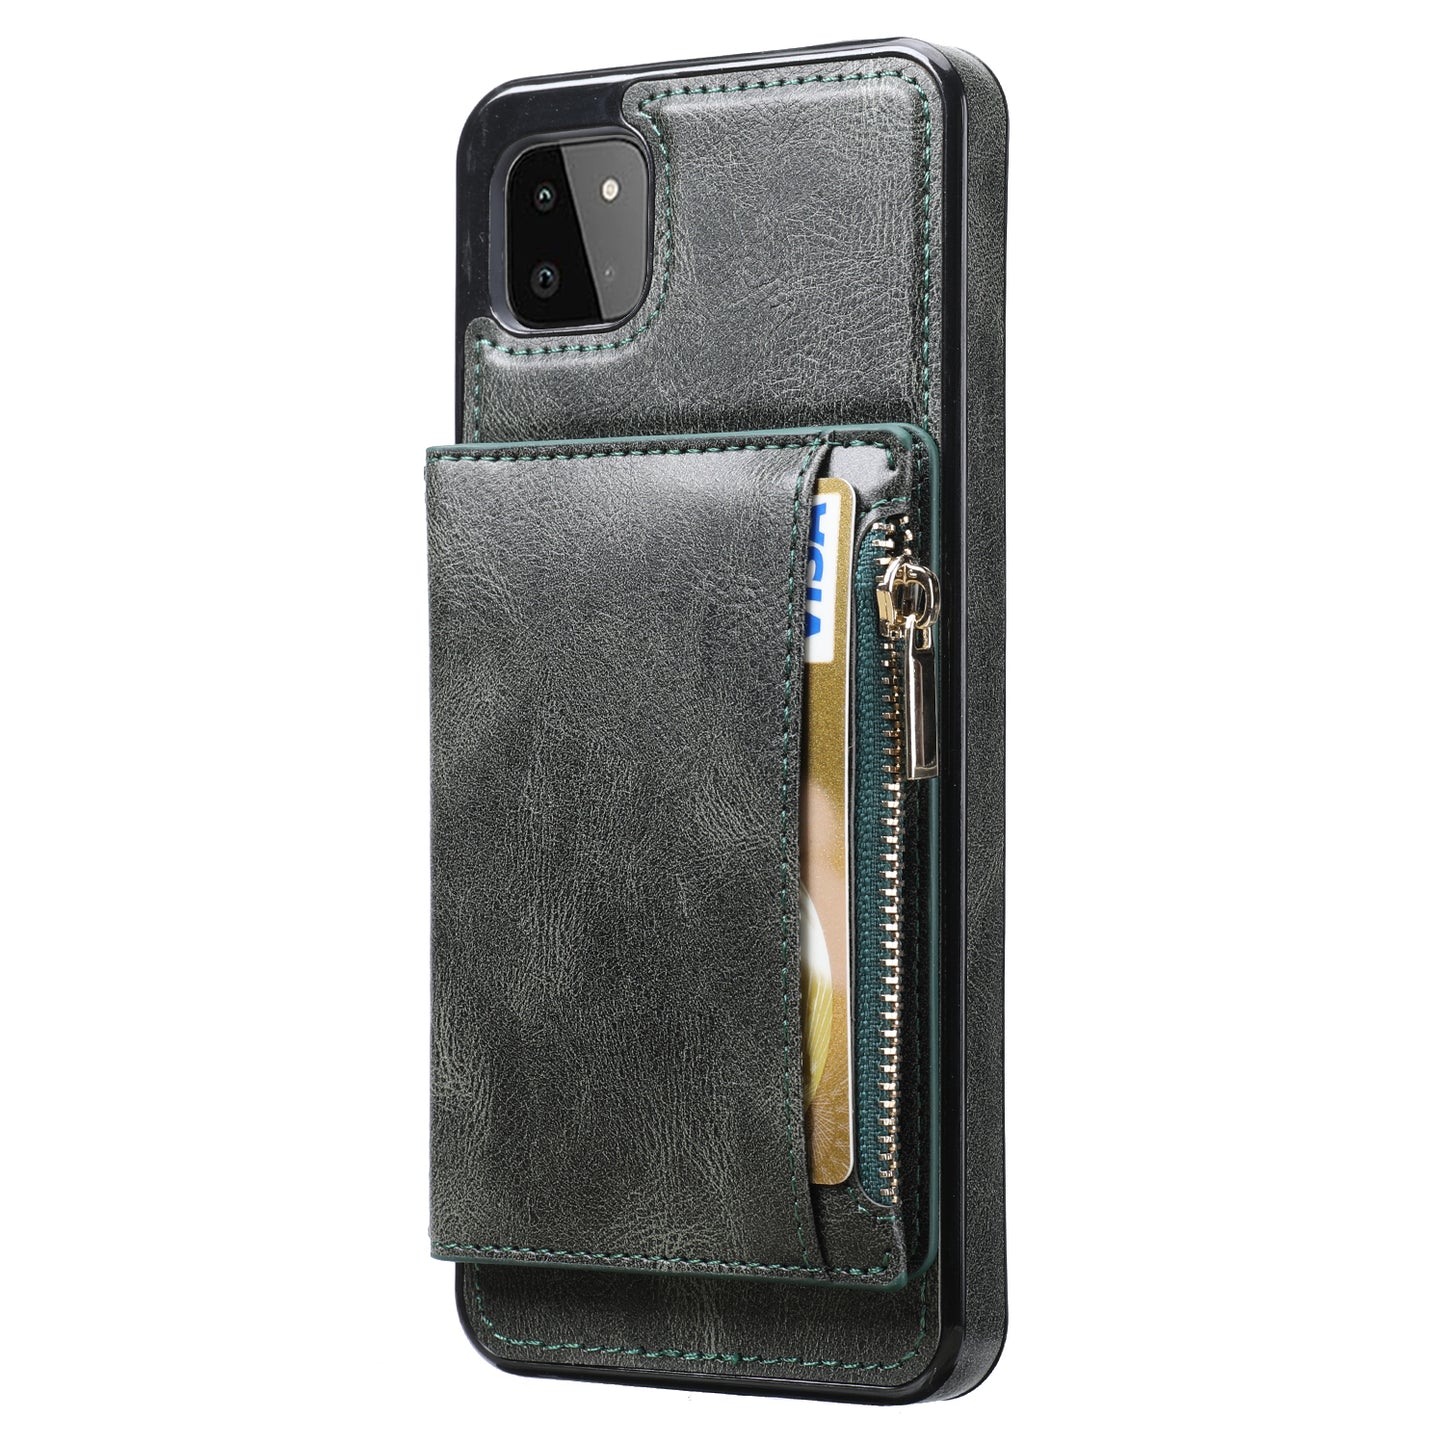 Samsung Galaxy A22 Leather Cover Multifuntional Wallet External Card Holder Kickstand TPU Zipper